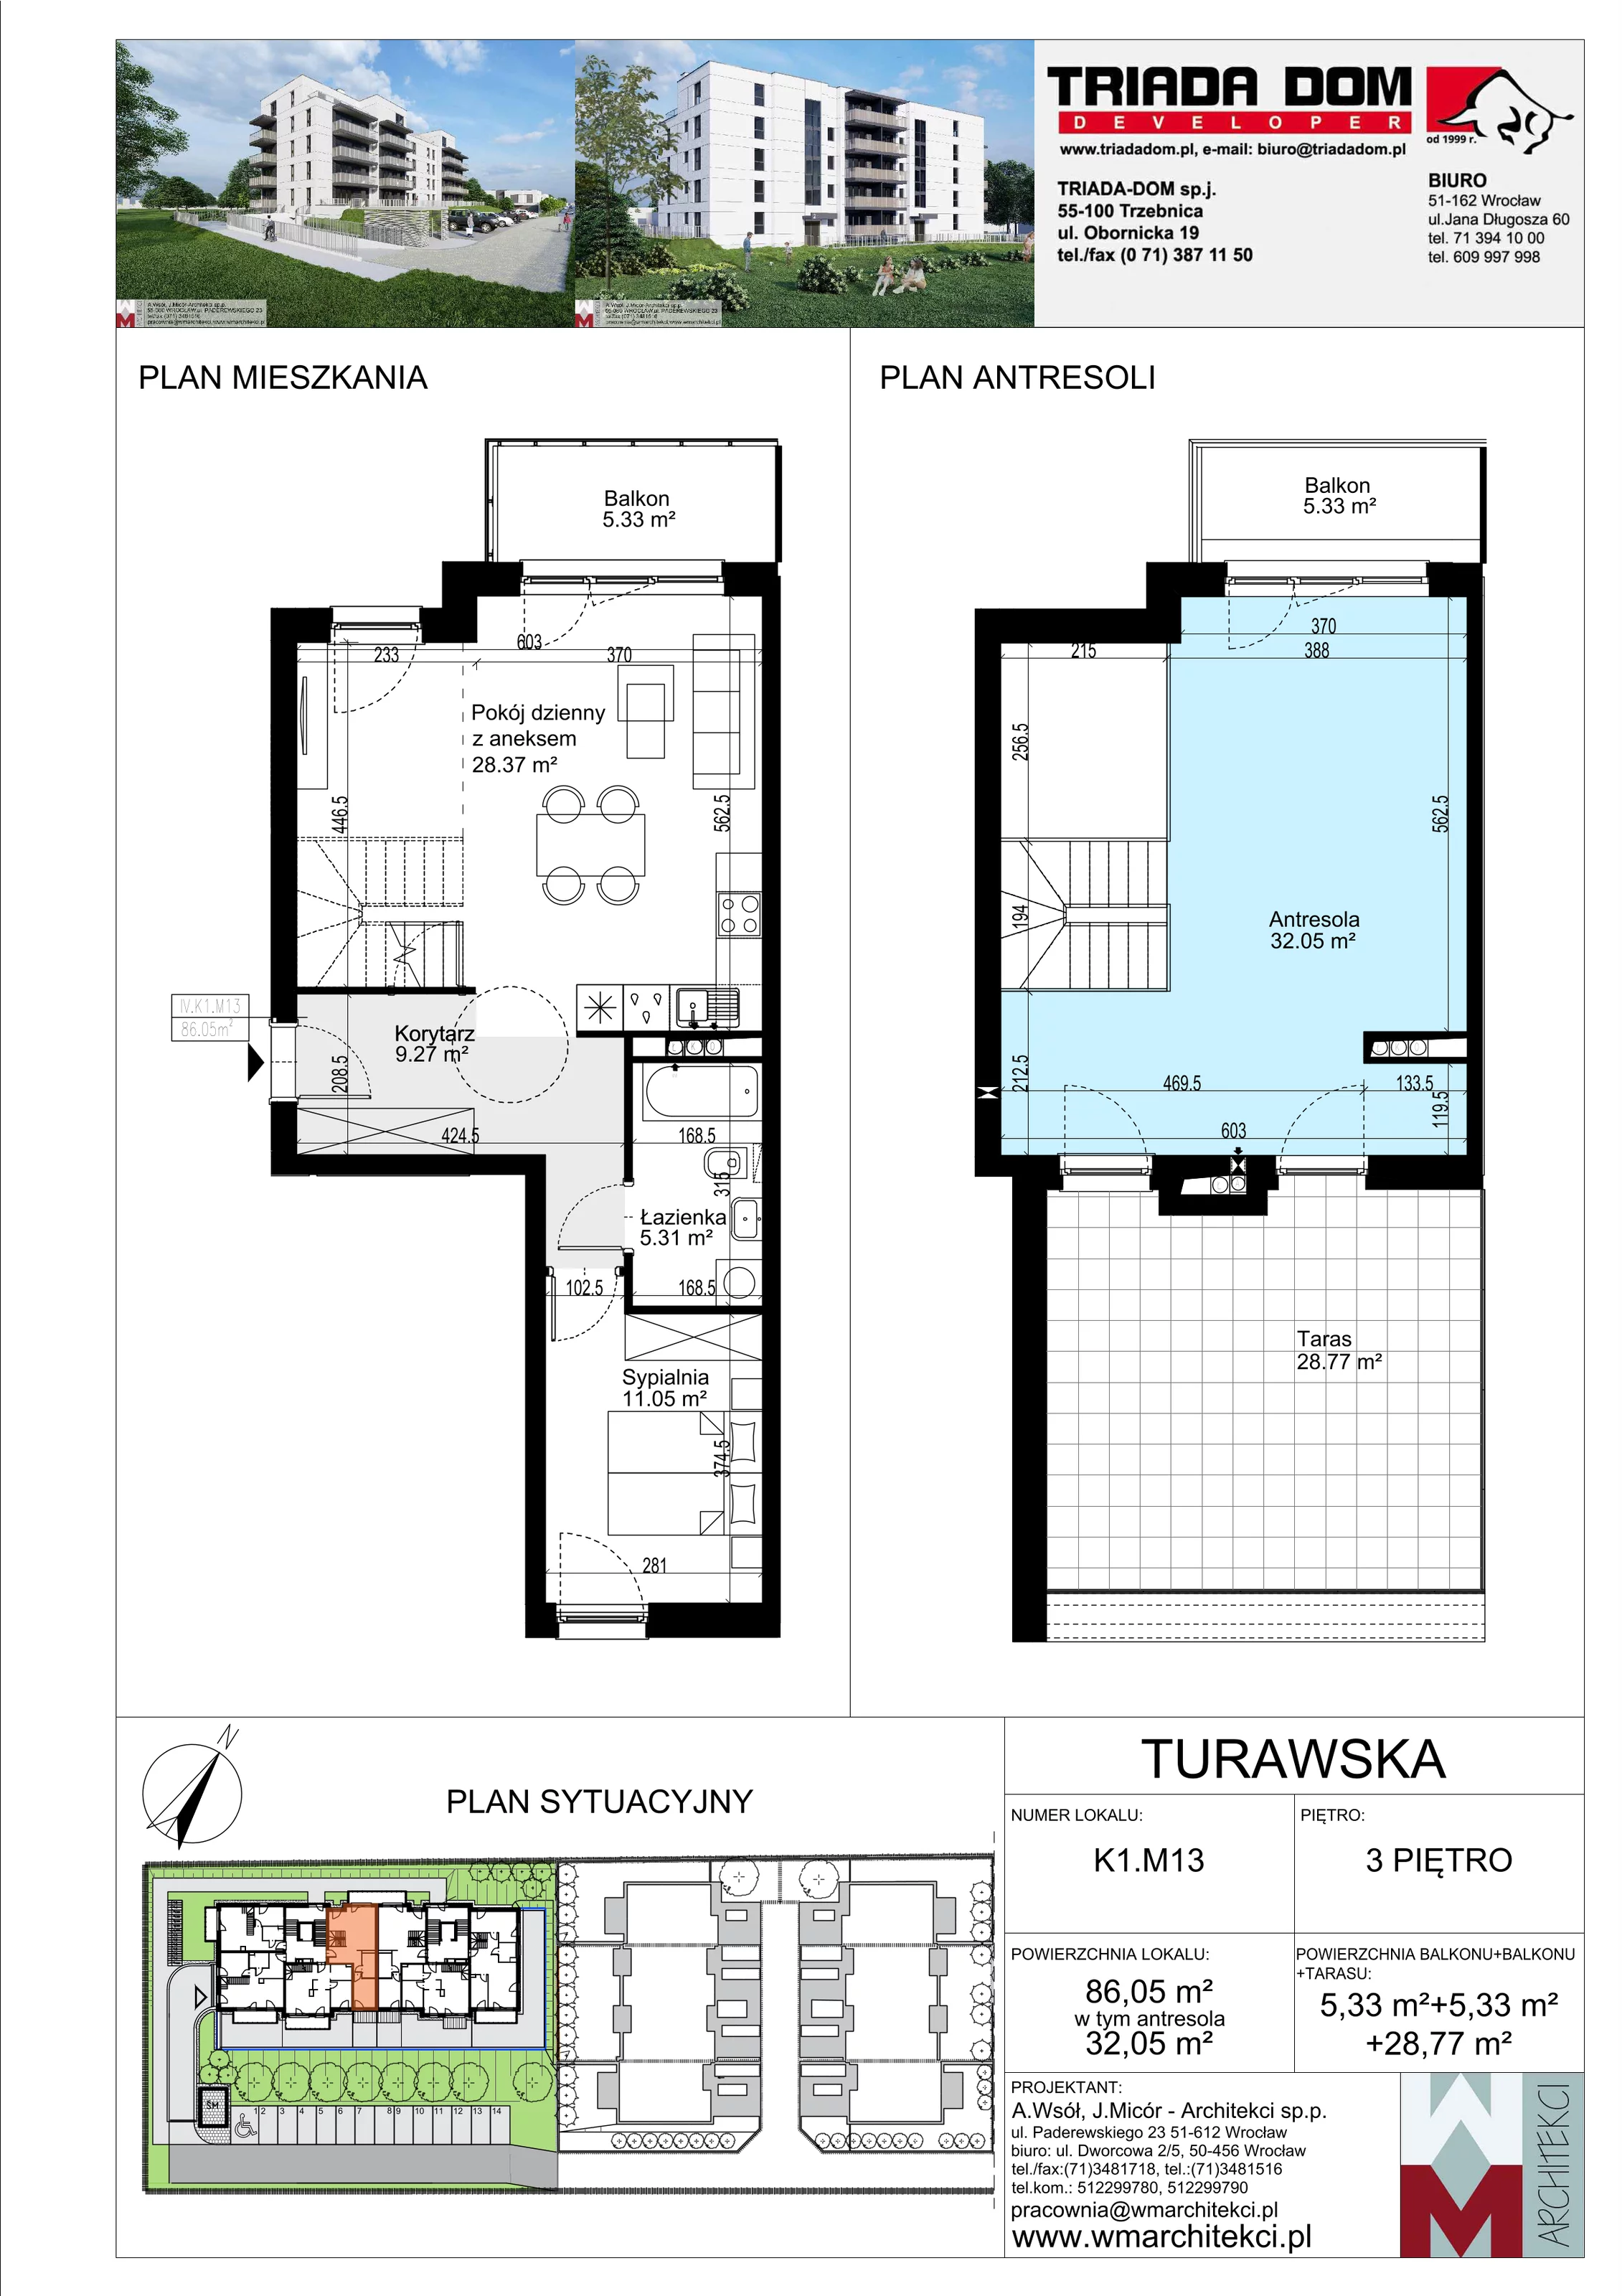 Mieszkanie 86,05 m², piętro 3, oferta nr K1.M13, Ogrody Turawska, Wrocław, Księże, Krzyki, ul. Turawska 78